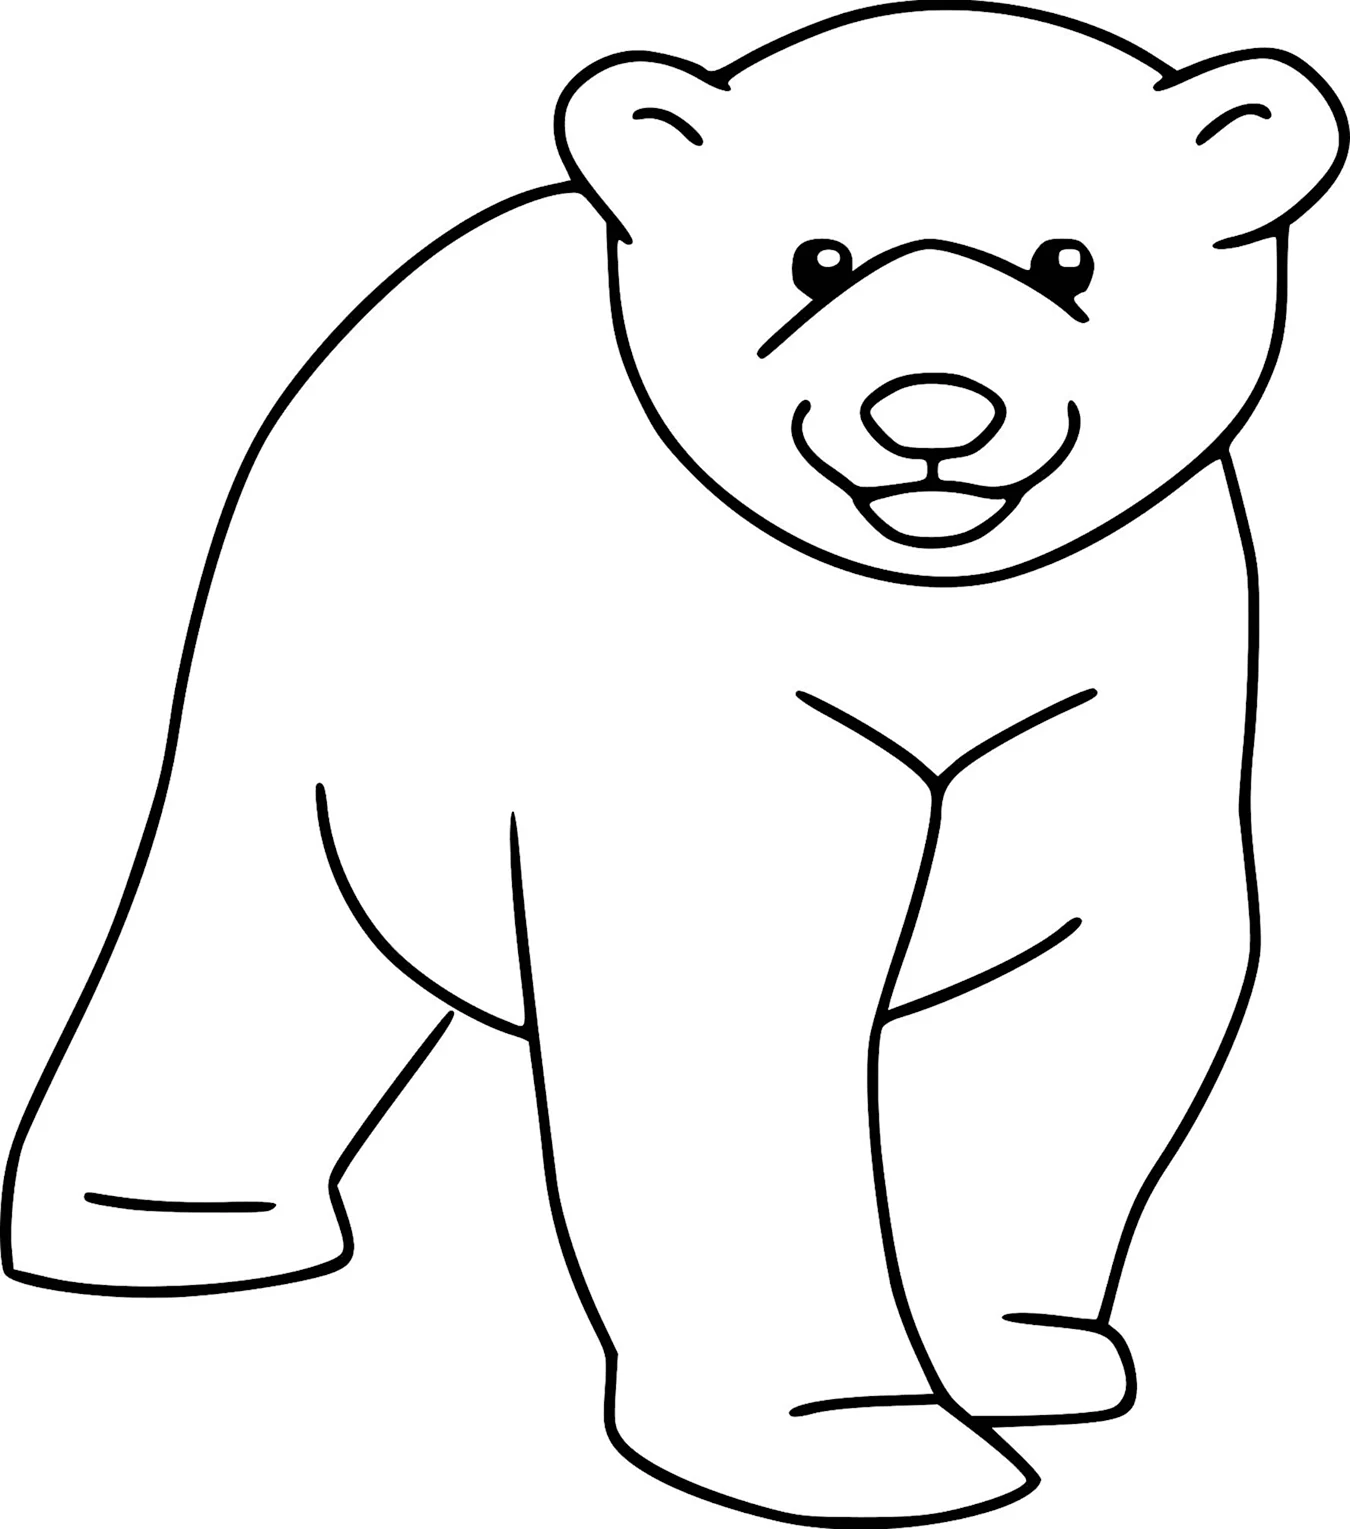 Медведь раскраска для детей. Для срисовки